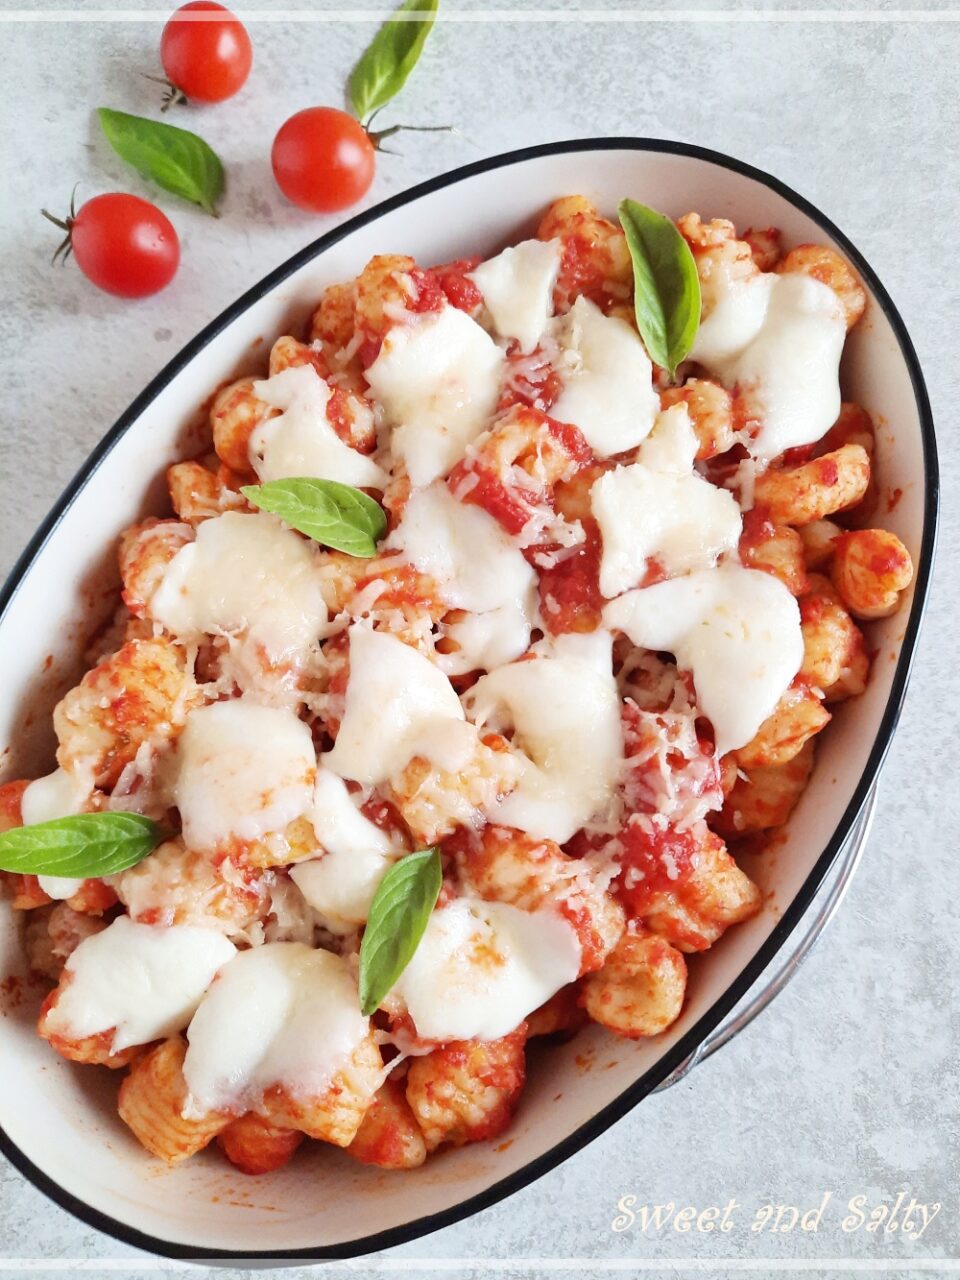 Gnocchi alla Sorrentina (Potato gnocchi with mozzarella cheese)